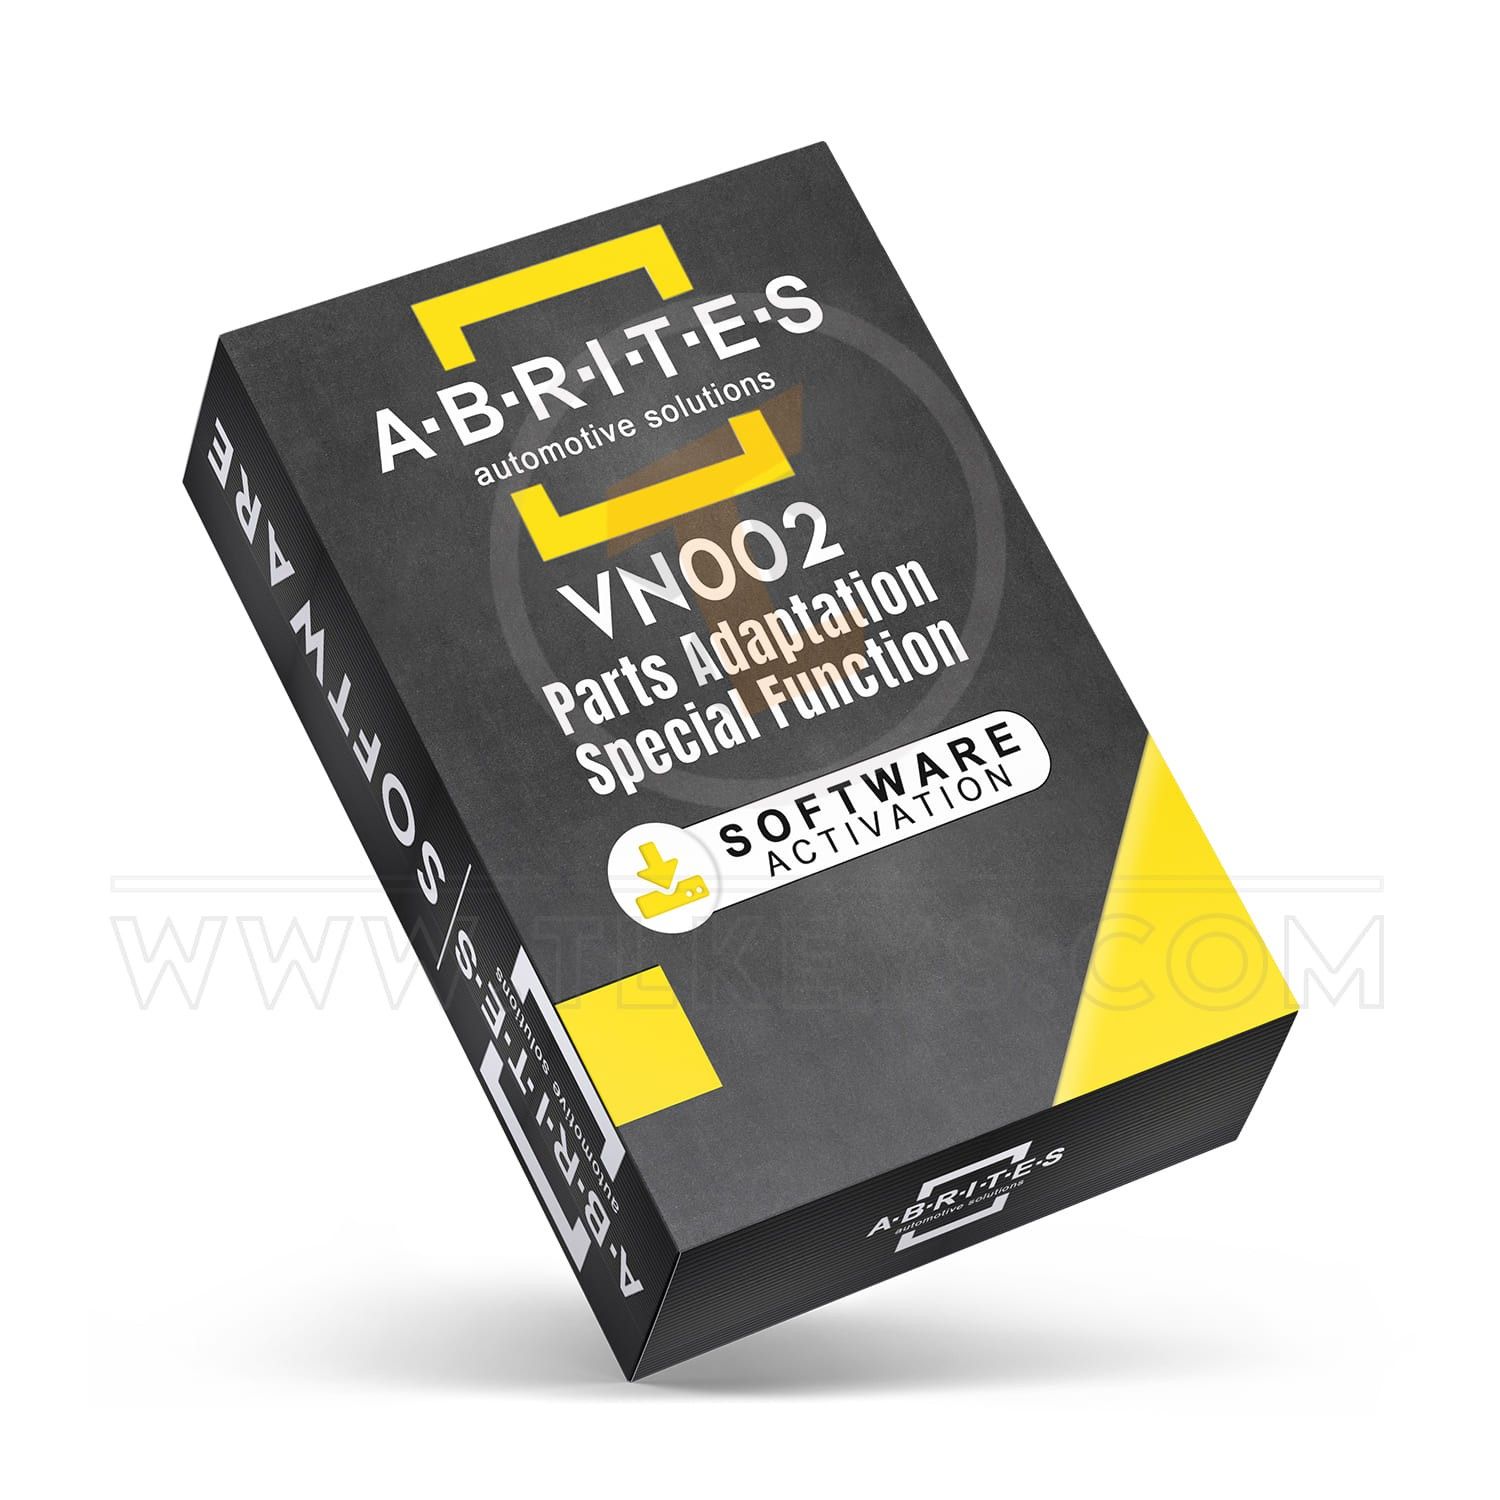 VN002 - Parts adaptation software